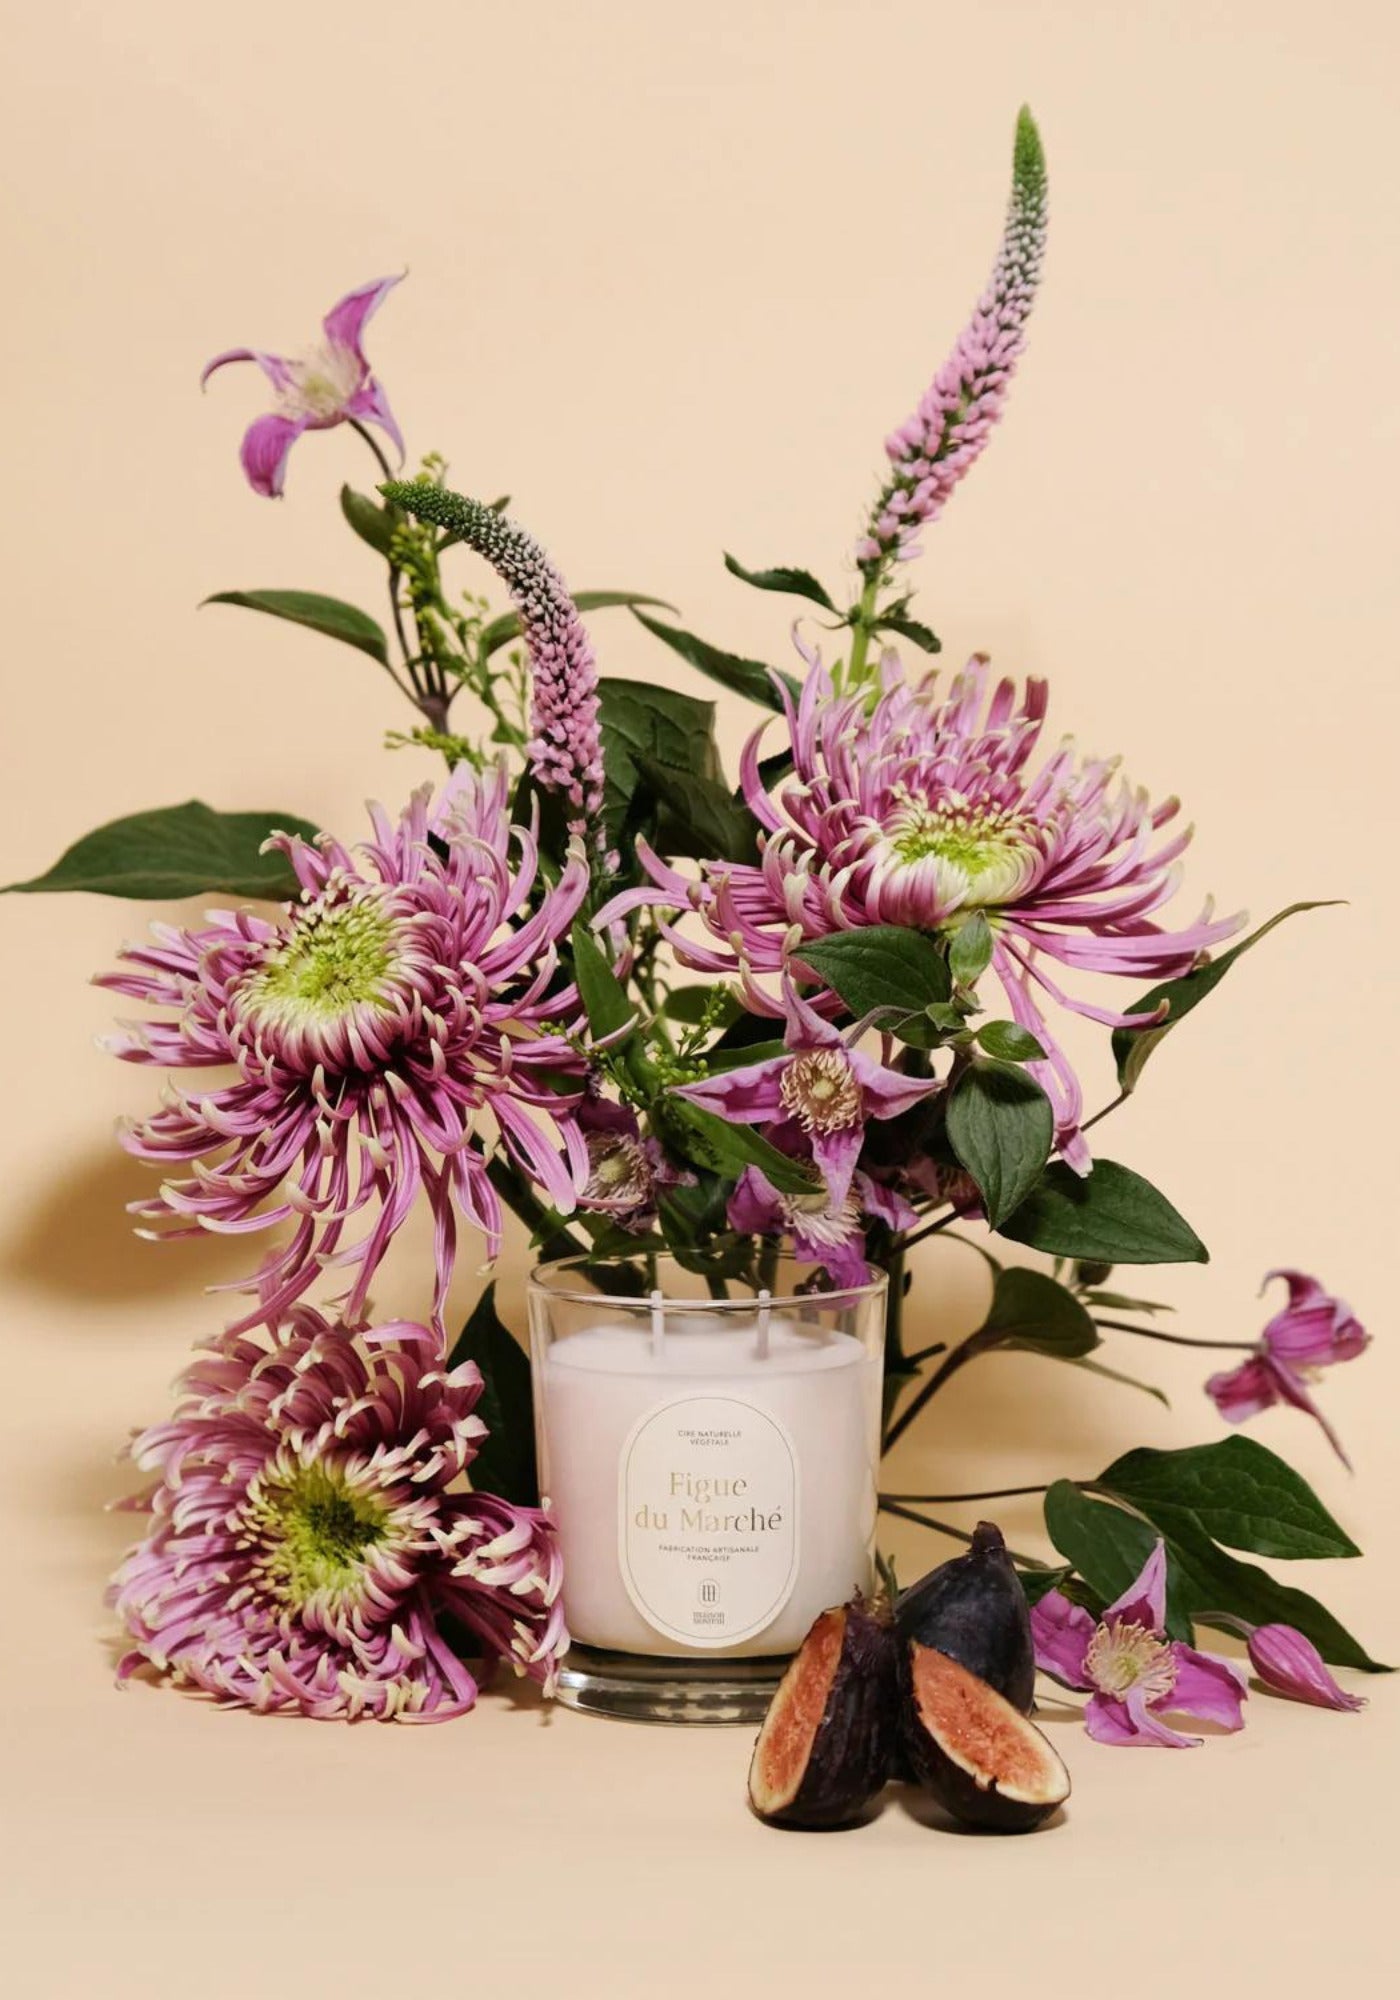 La bougie parfumée Figue du Marché de chez Maison Maison est entourée de fleurs et de figues